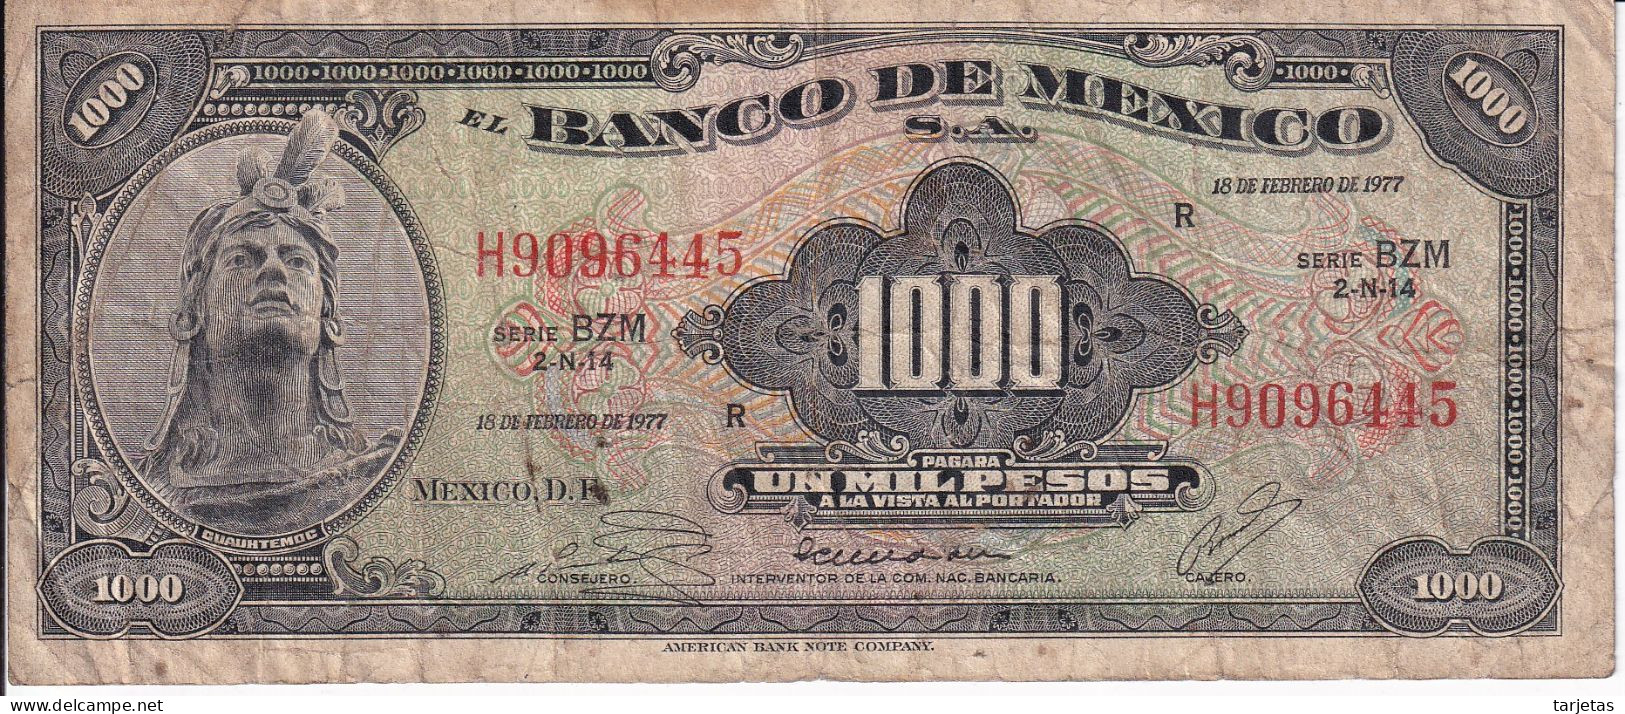 BILLETE DE MEXICO DE 1000 PESOS DEL 18 DE FEBRERO DE 1977 DIFERENTES FIRMAS (BANKNOTE) - Mexico